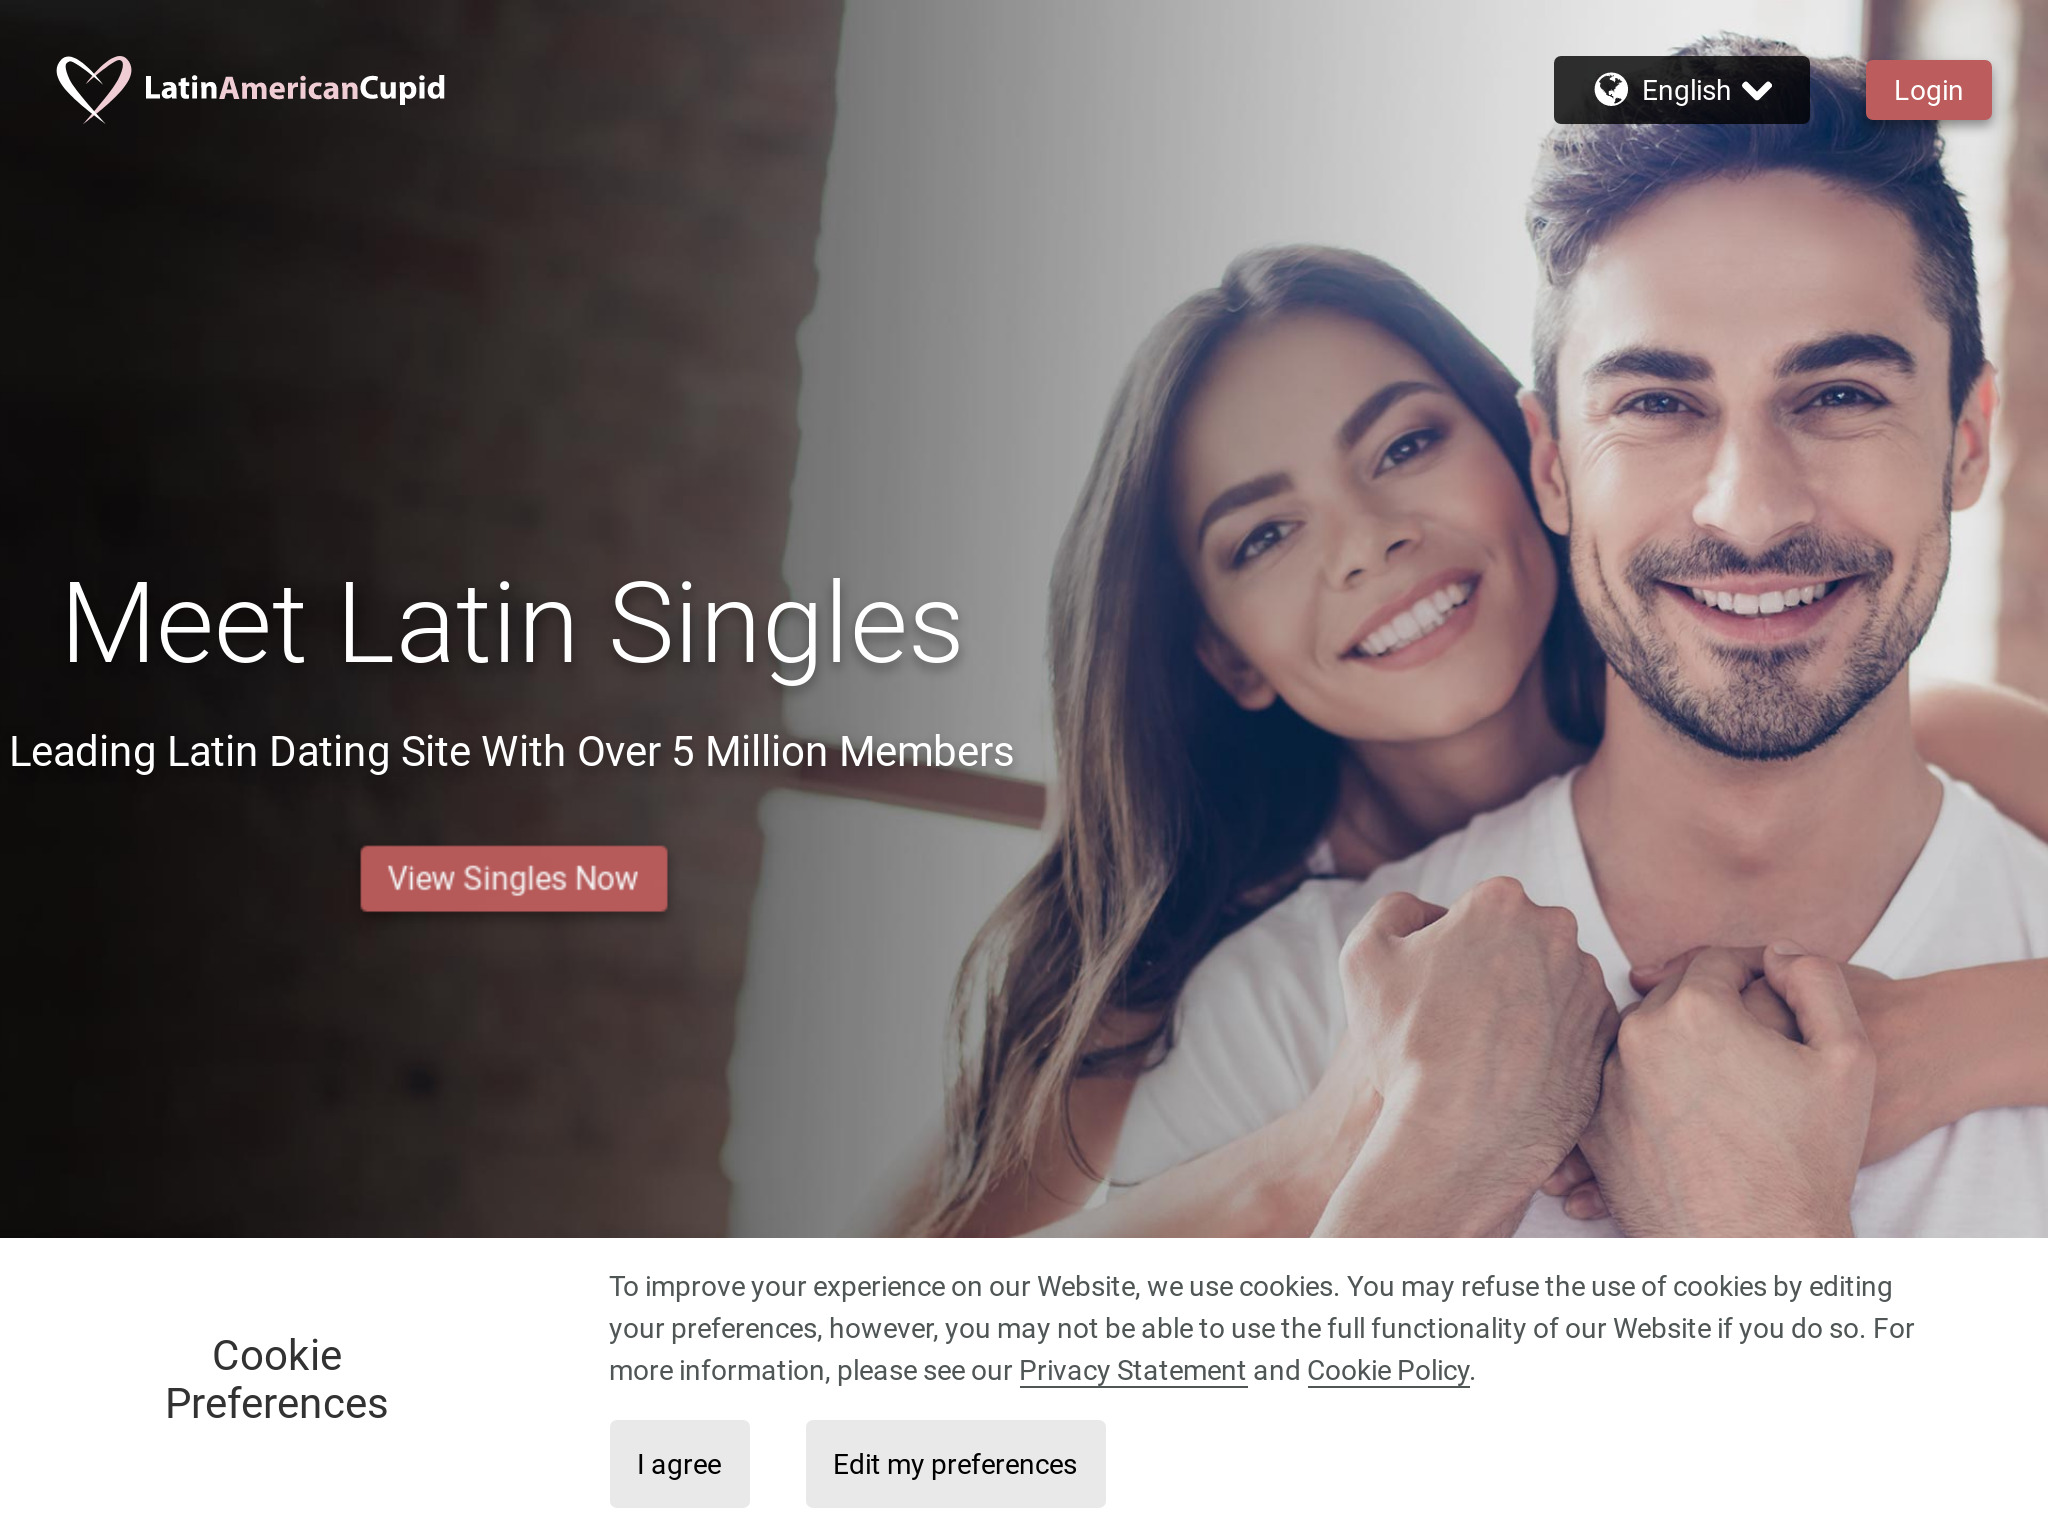 Avaliação do LatinAmericanCupid: vale a pena tentar?